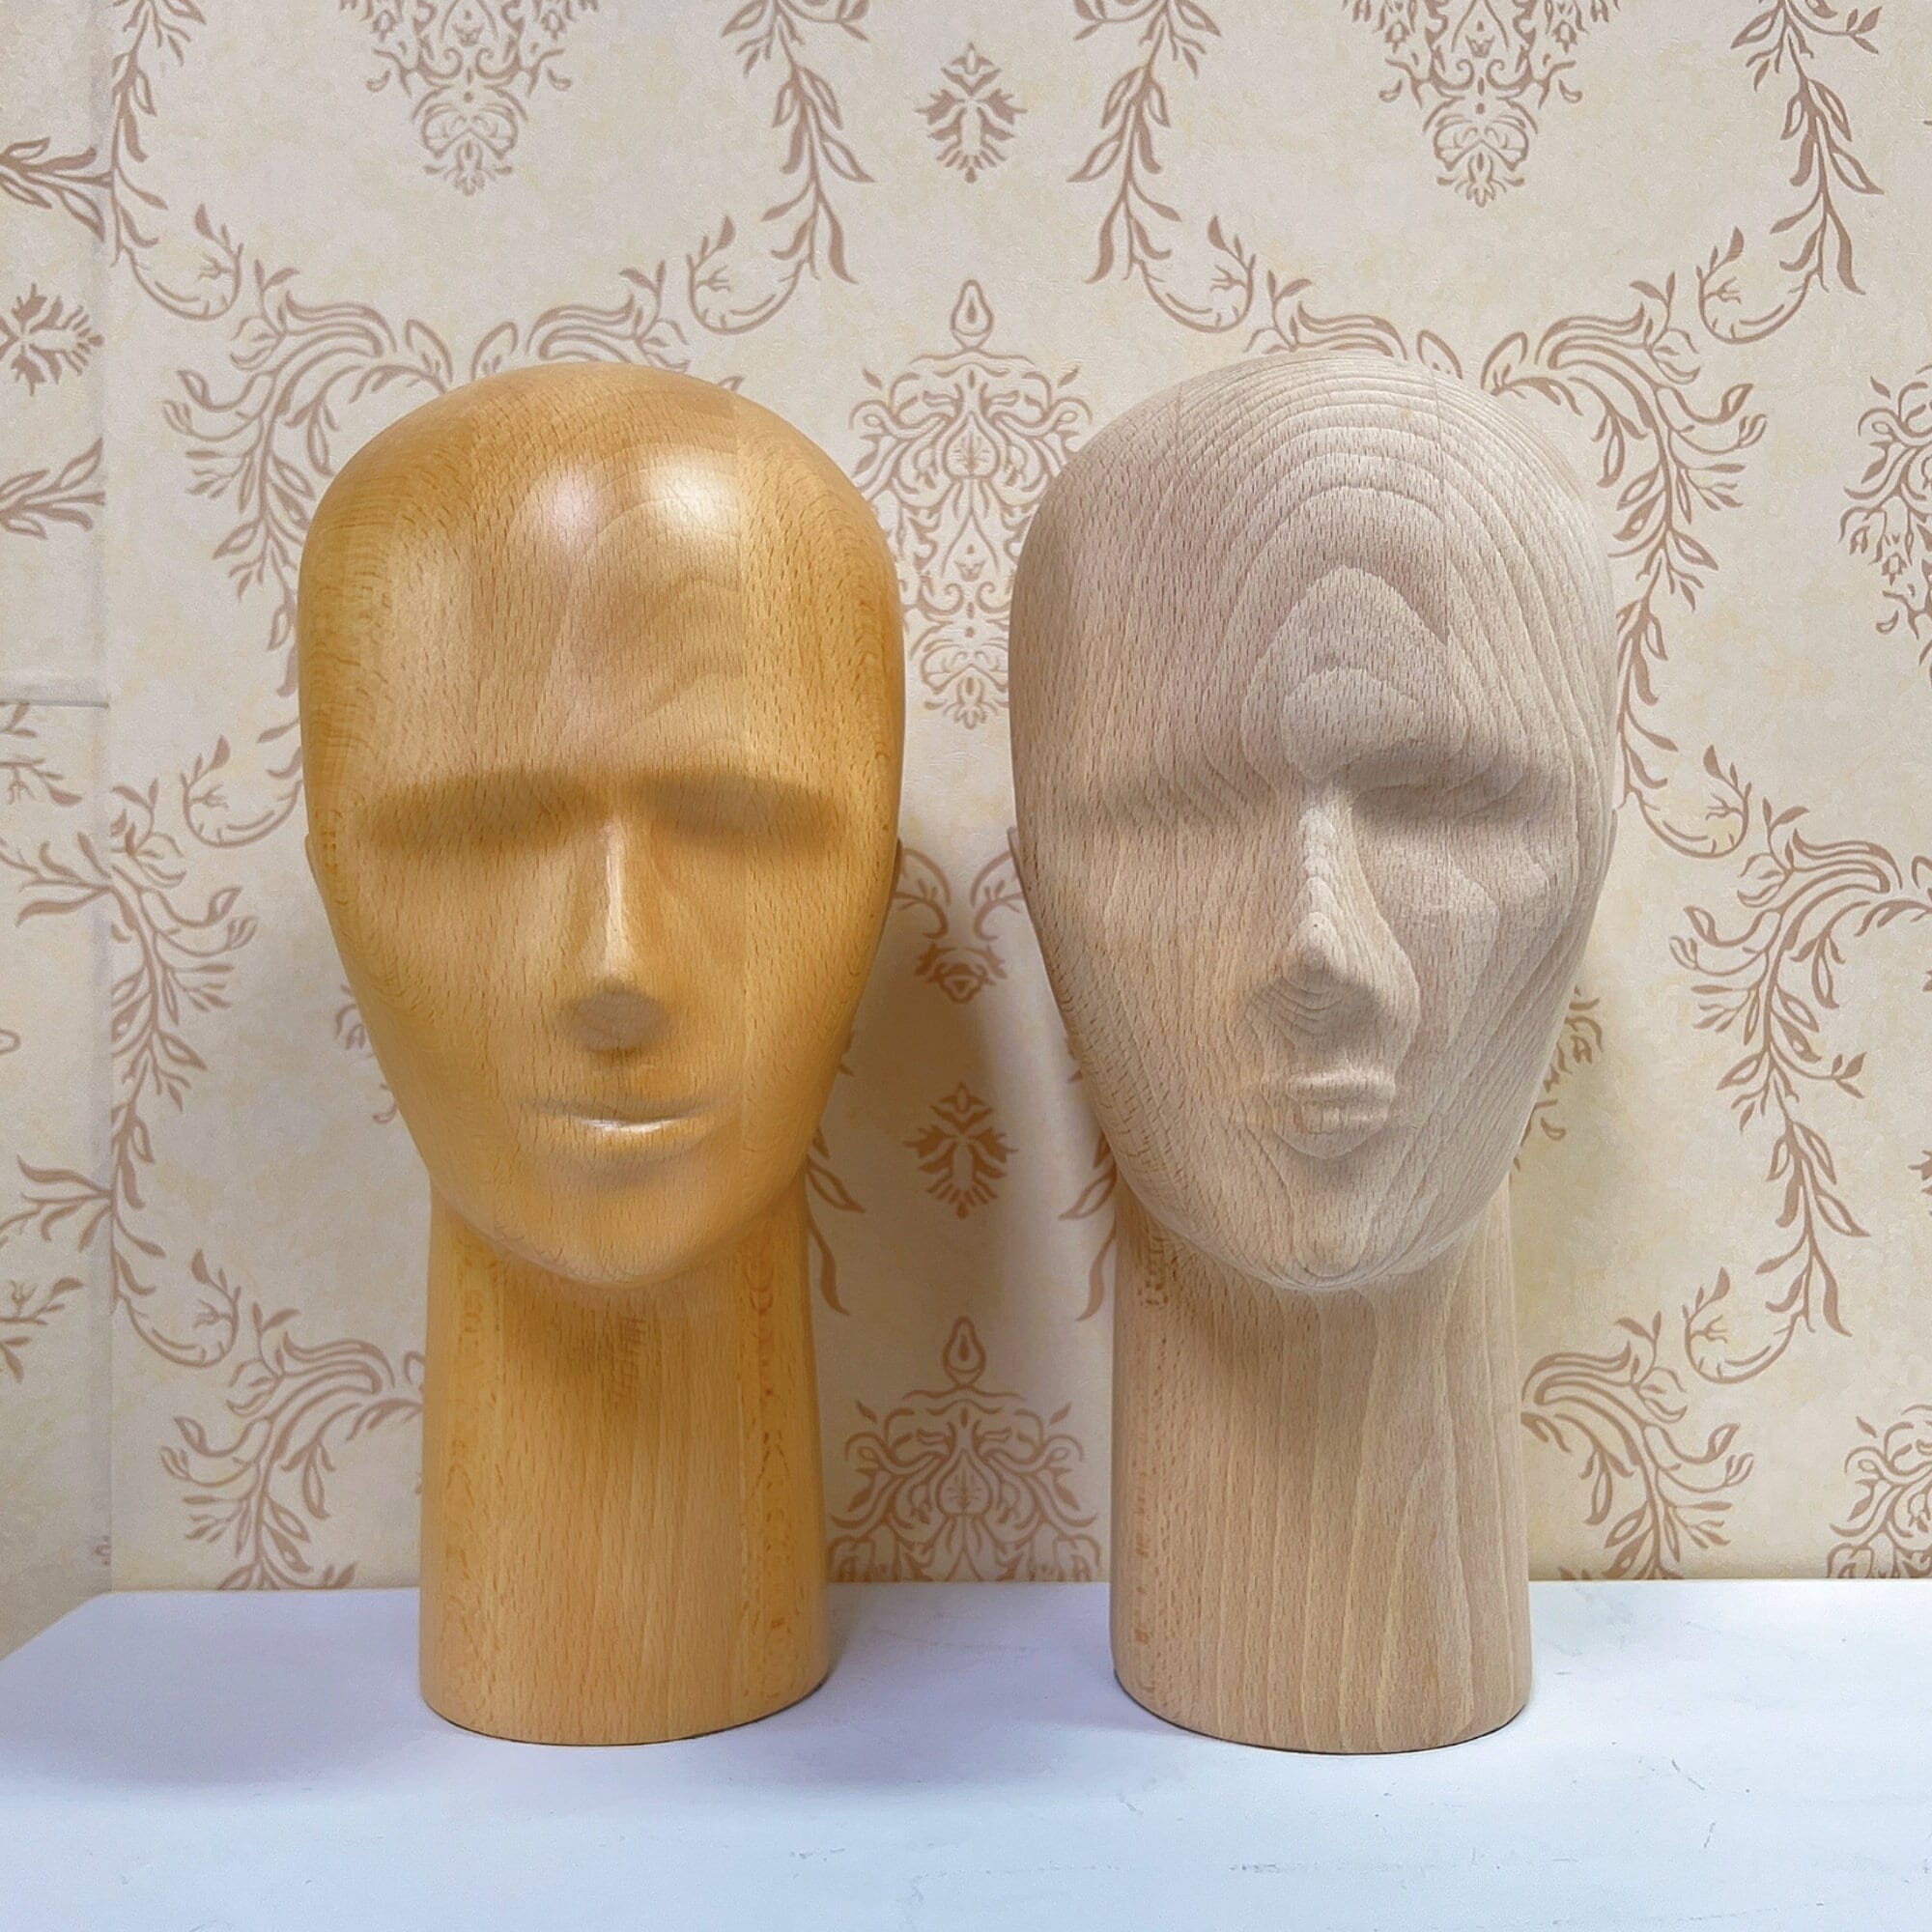 4 Pcs mannequin head for store Glasses Display Holder Female Foam